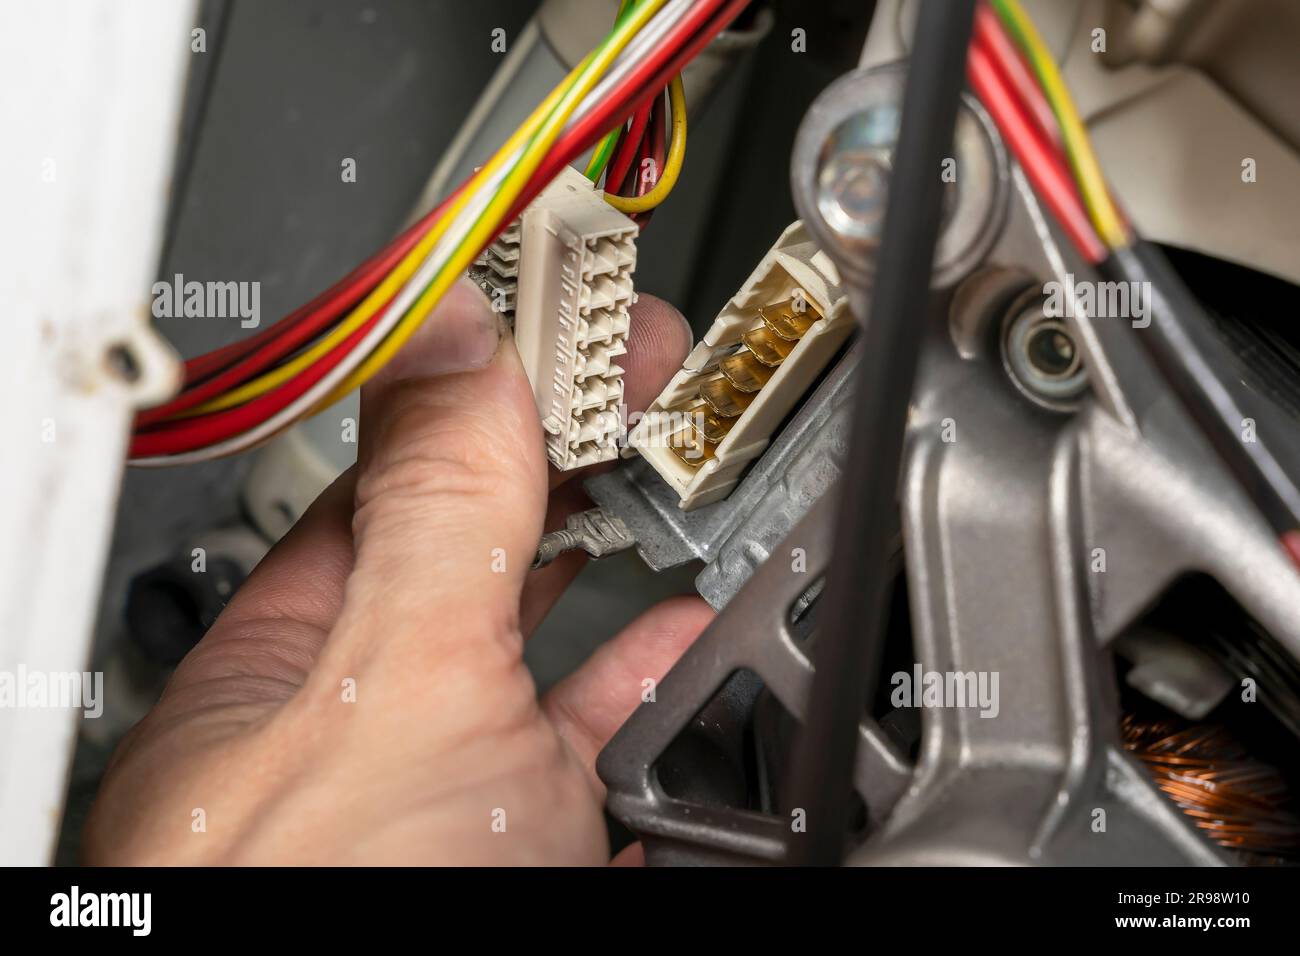 un technicien de maintenance doit débrancher le connecteur électrique multi-contact, la fiche électrique, la borne multi-contact, la connexion électrique multi-contact Banque D'Images